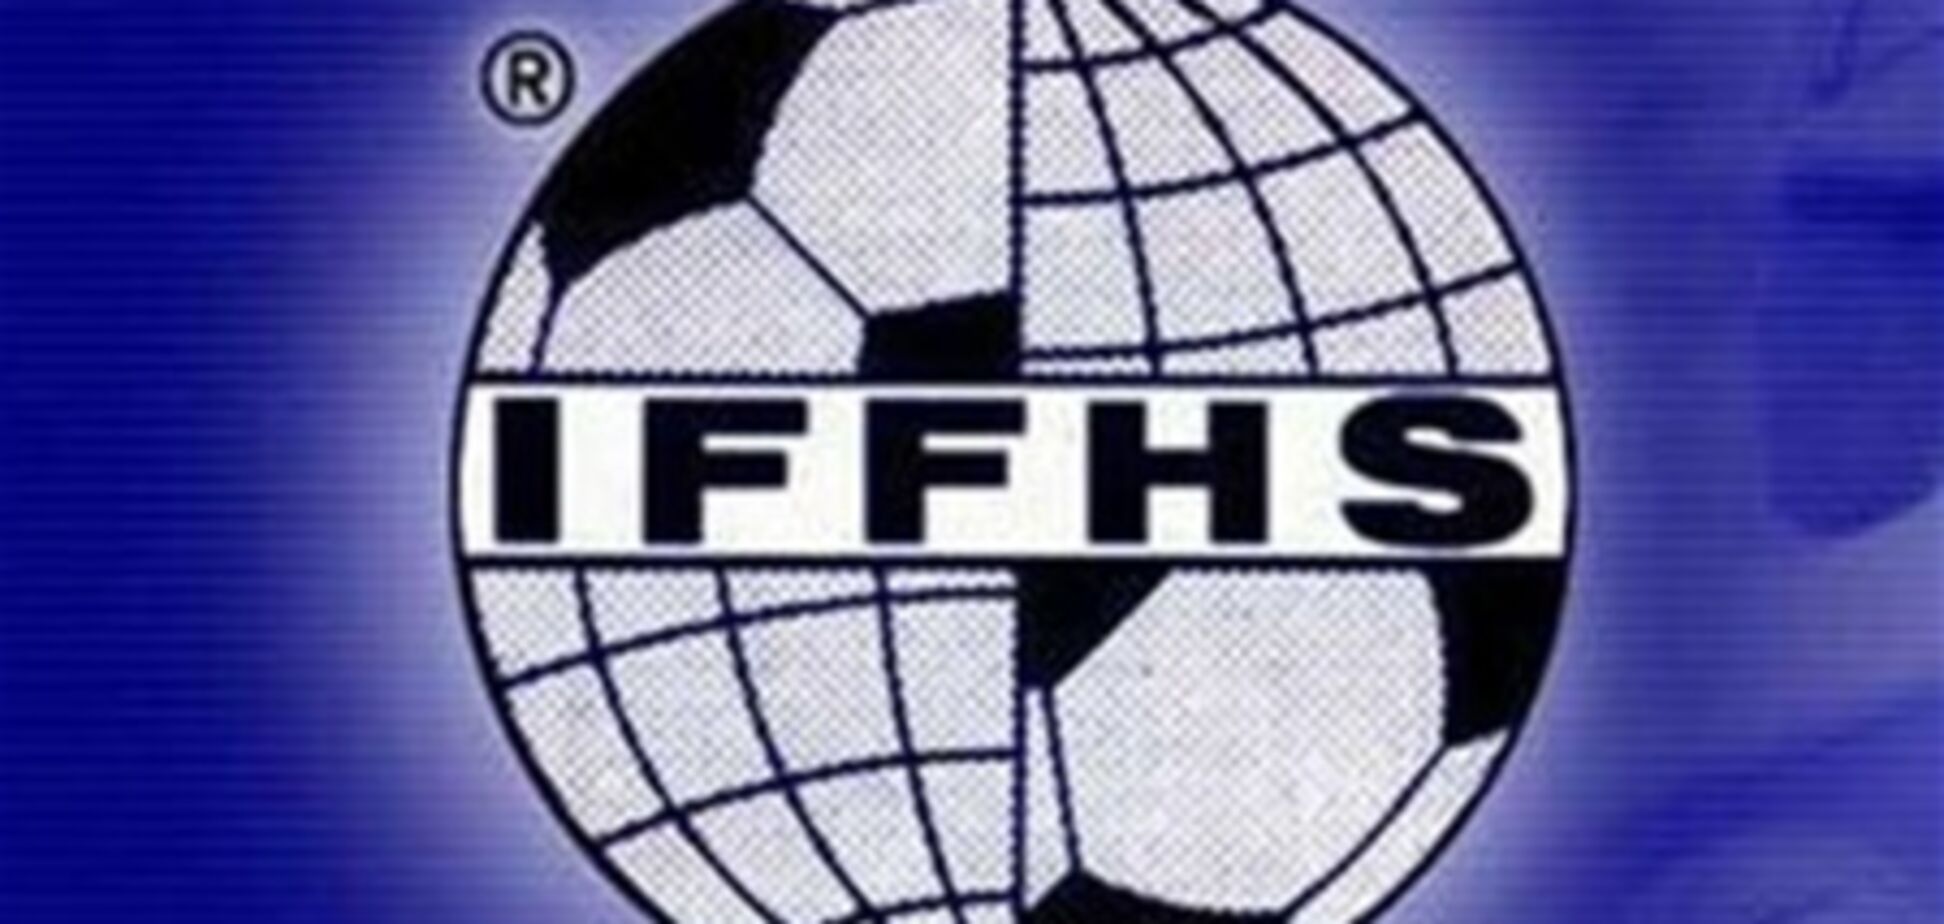 Рейтинг IFFHS. 'Металлист' - сильнейший клуб Украины